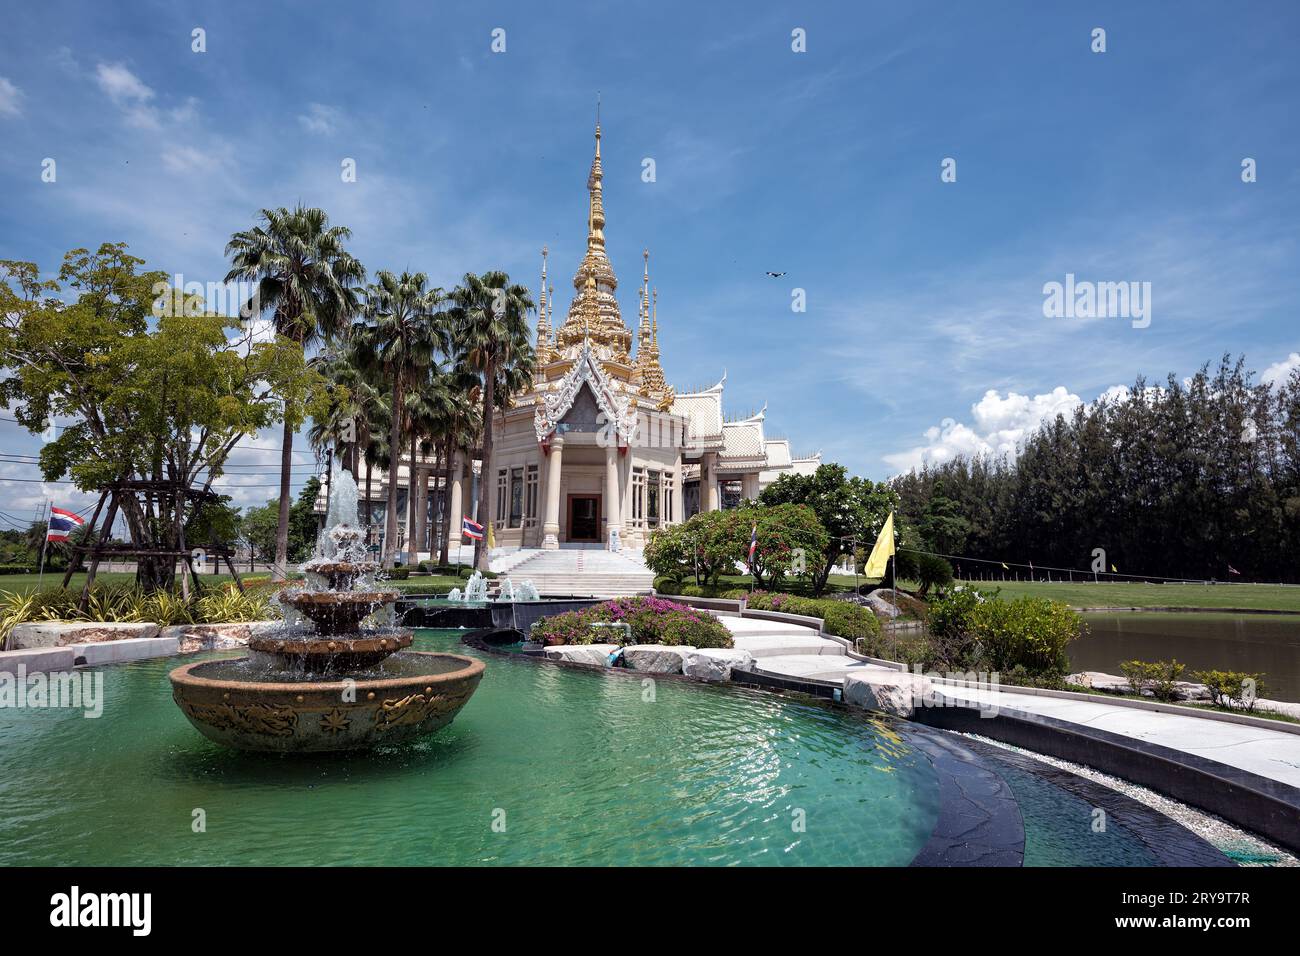 Wat Non Kum Temple, Sikhio, Thailand - Beautiful of Buddhist Temple, Wat Non Kum or Non Kum temple, famous place of Nakhon Ratchasima, Thailand Stock Photo